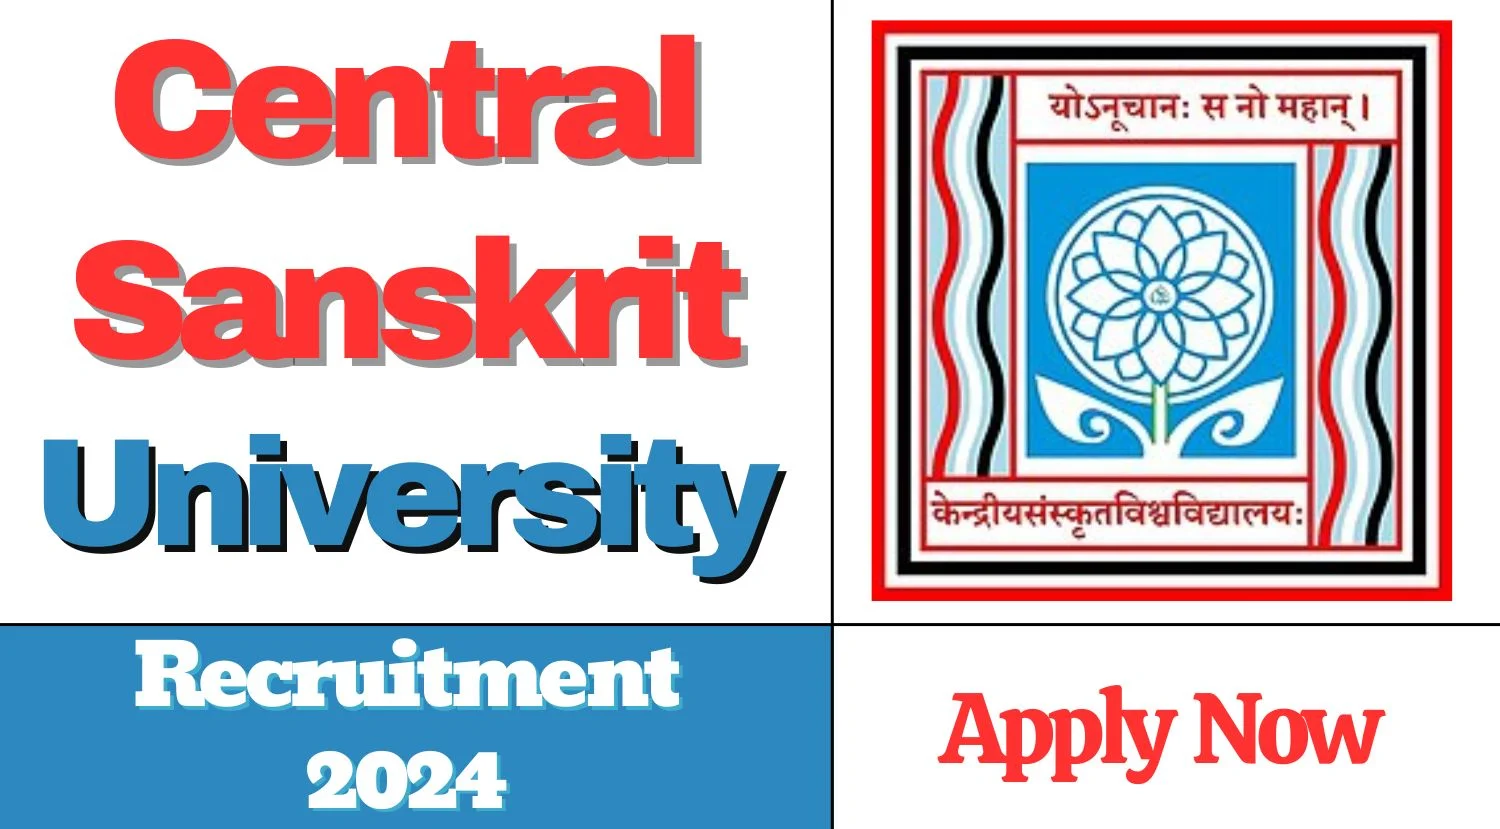 Central Sanskrit University Recruitment 2024